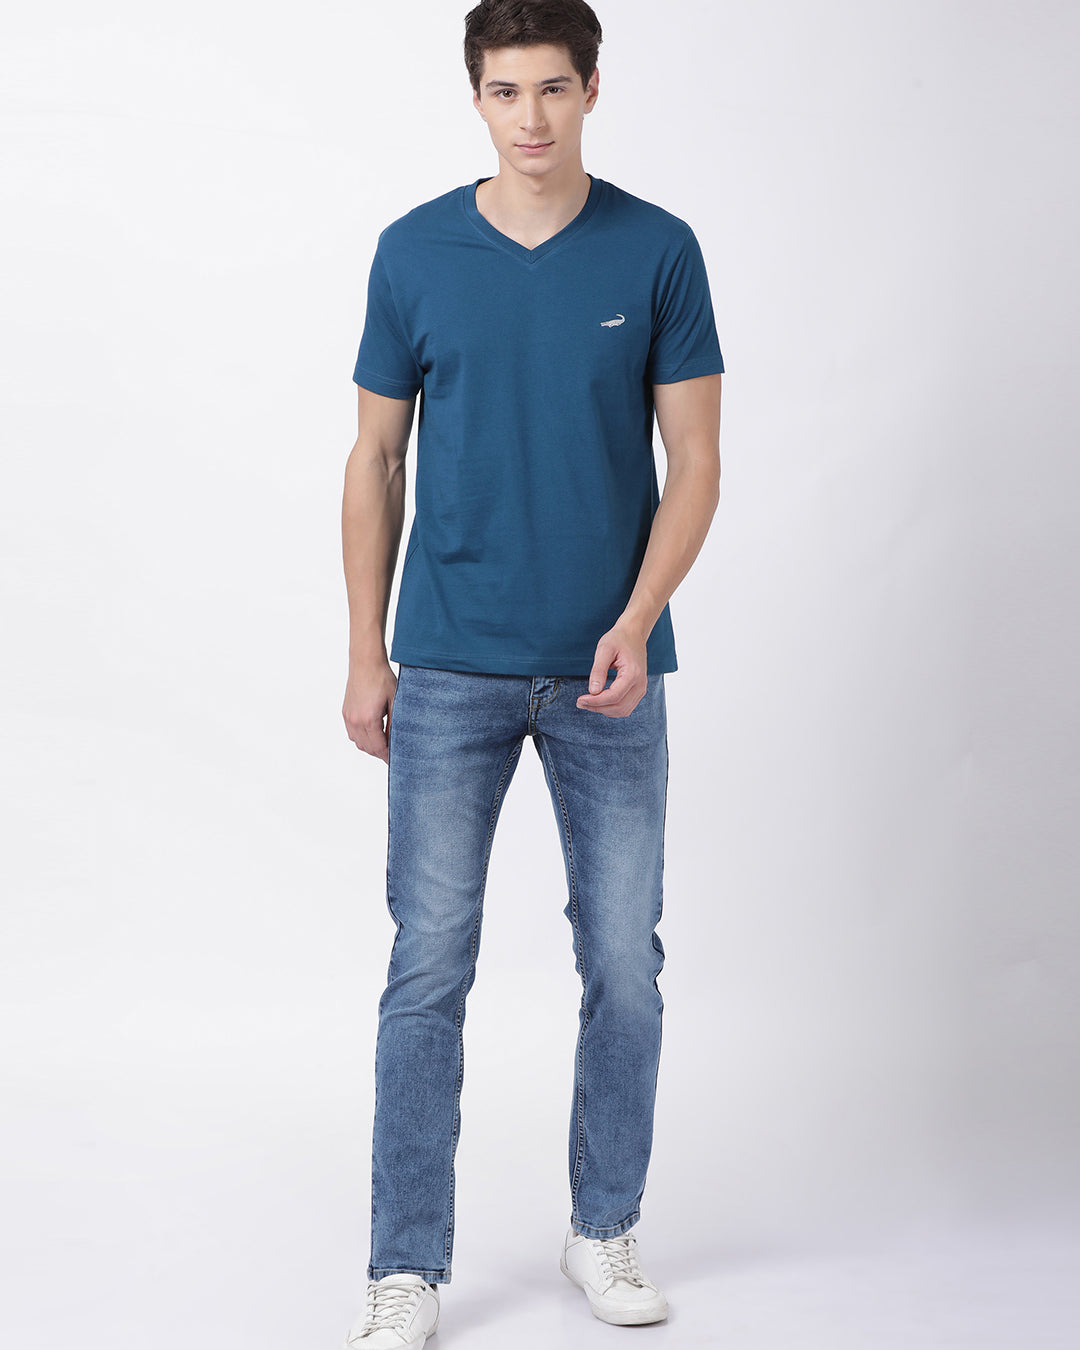 Men's Solid V Neck Half Sleeve Cotton T-Shirt - TEAL